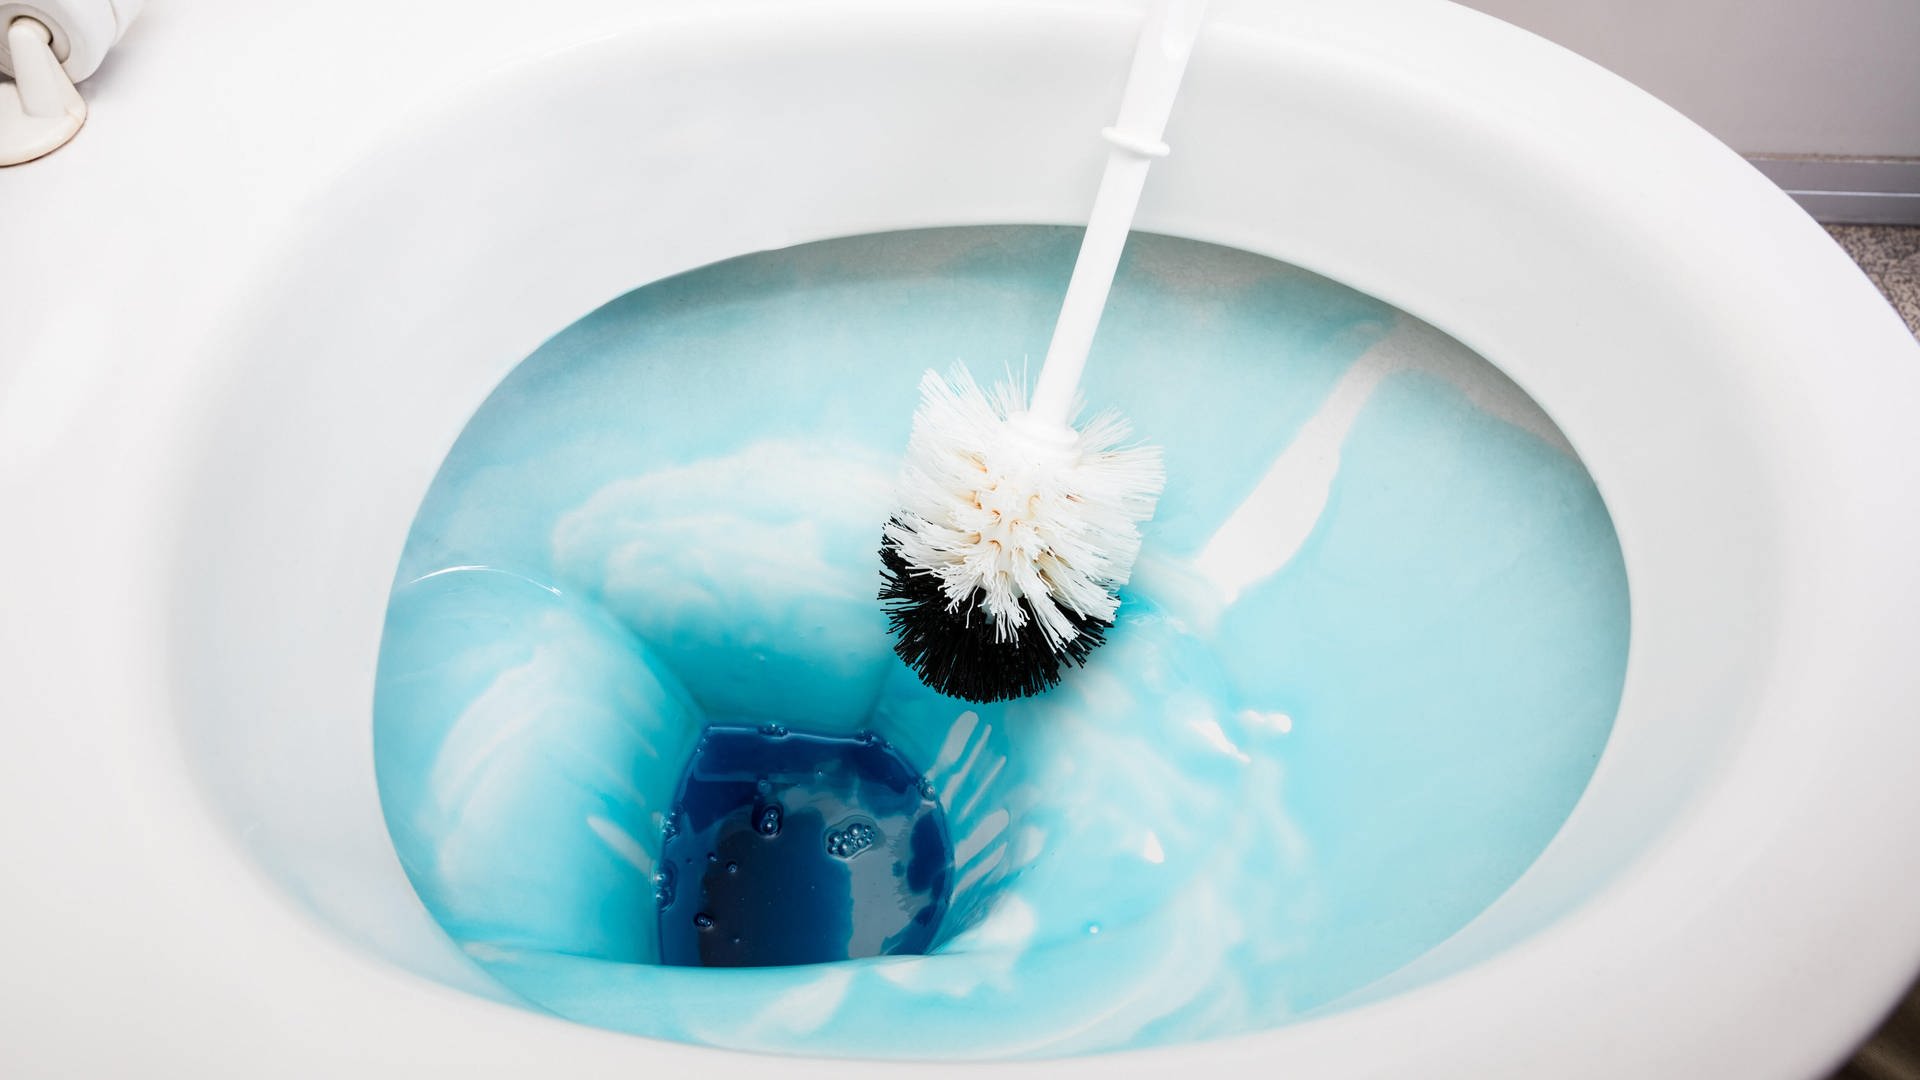 В ванной раковины унитазы чистят сколько раз. Ванные раковины унитазы чистят. Как чистить ванны раковины унитазы. Ванны раковины унитазы чистят как часто. Ванны раковины унитазы чистят в день.